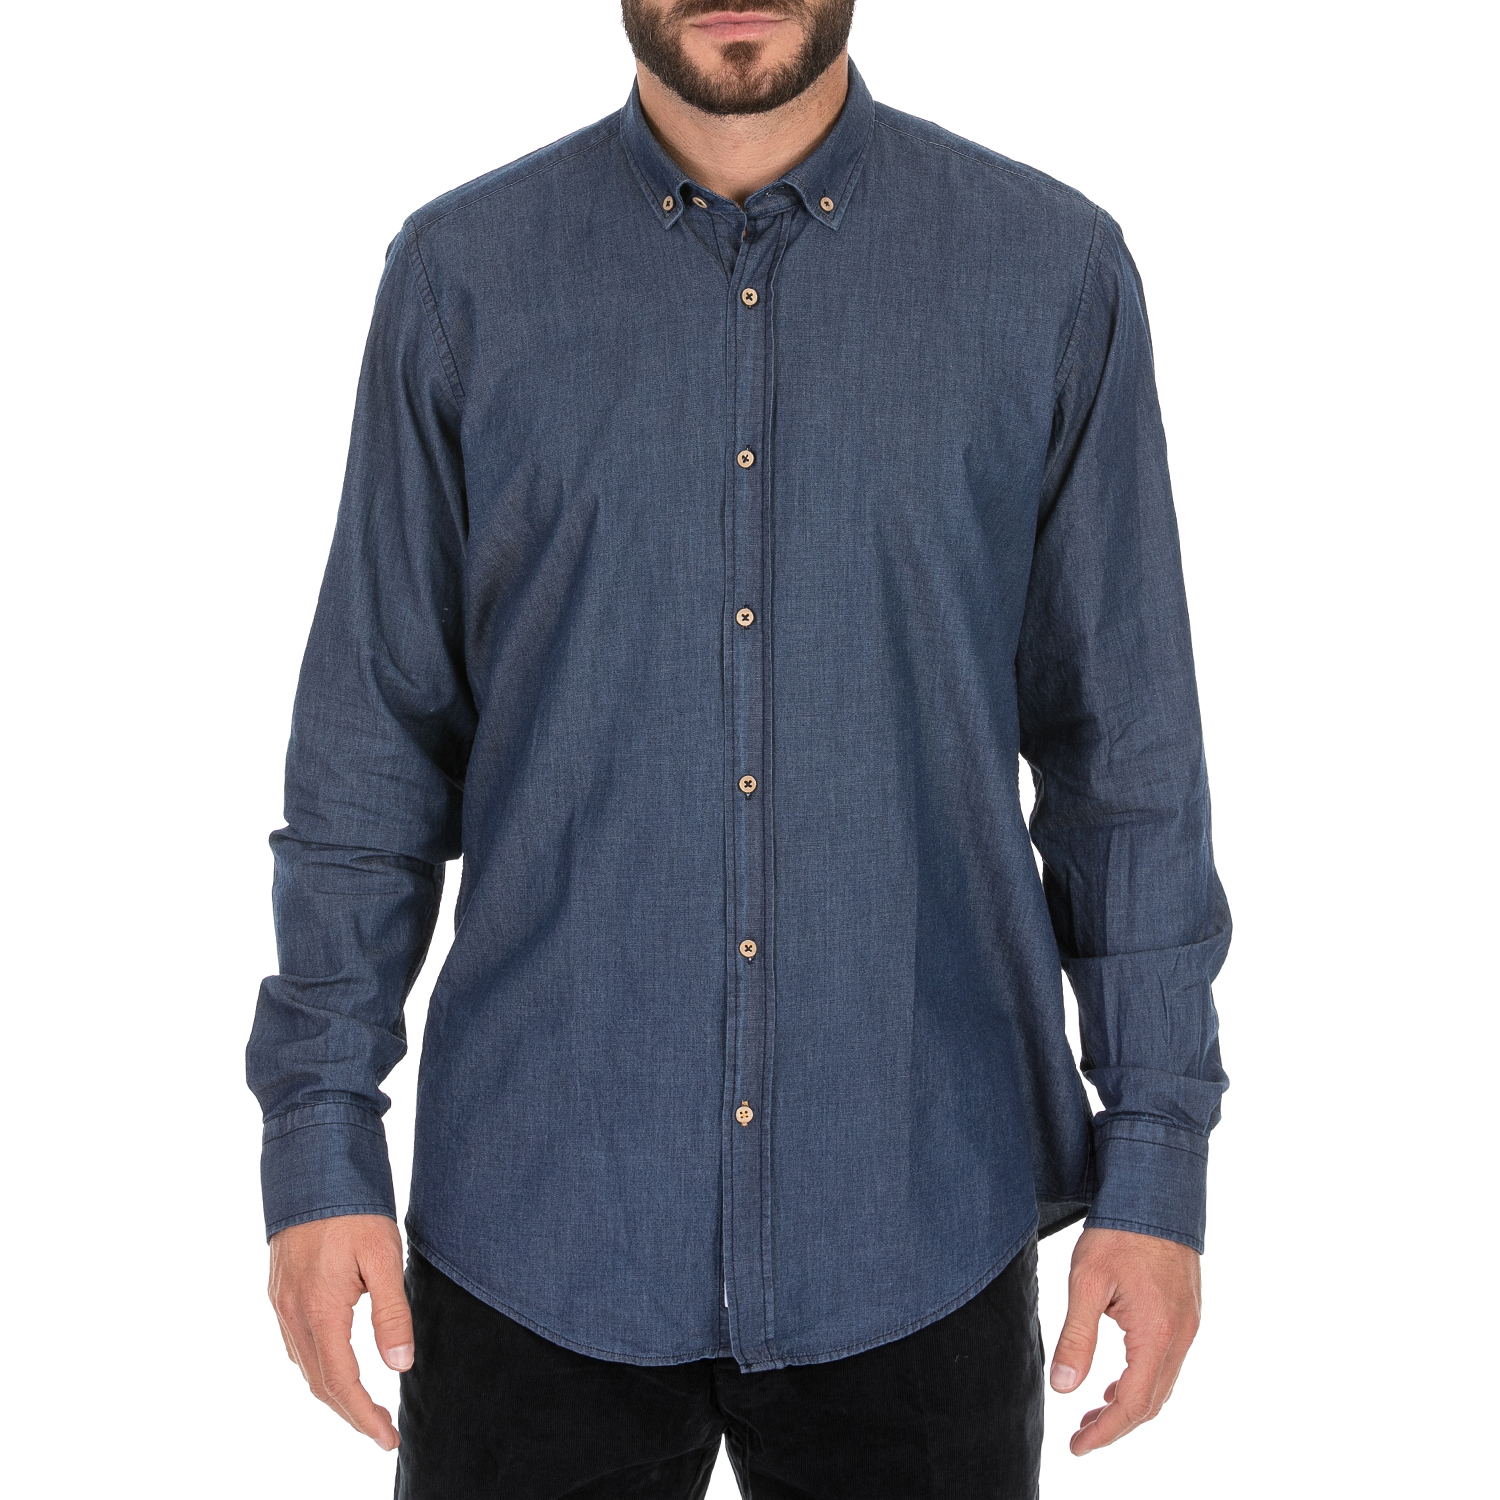 Ανδρικά/Ρούχα/Πουκάμισα/Μακρυμάνικα DORS - Ανδρικό denim πουκάμισο DORS μπλε